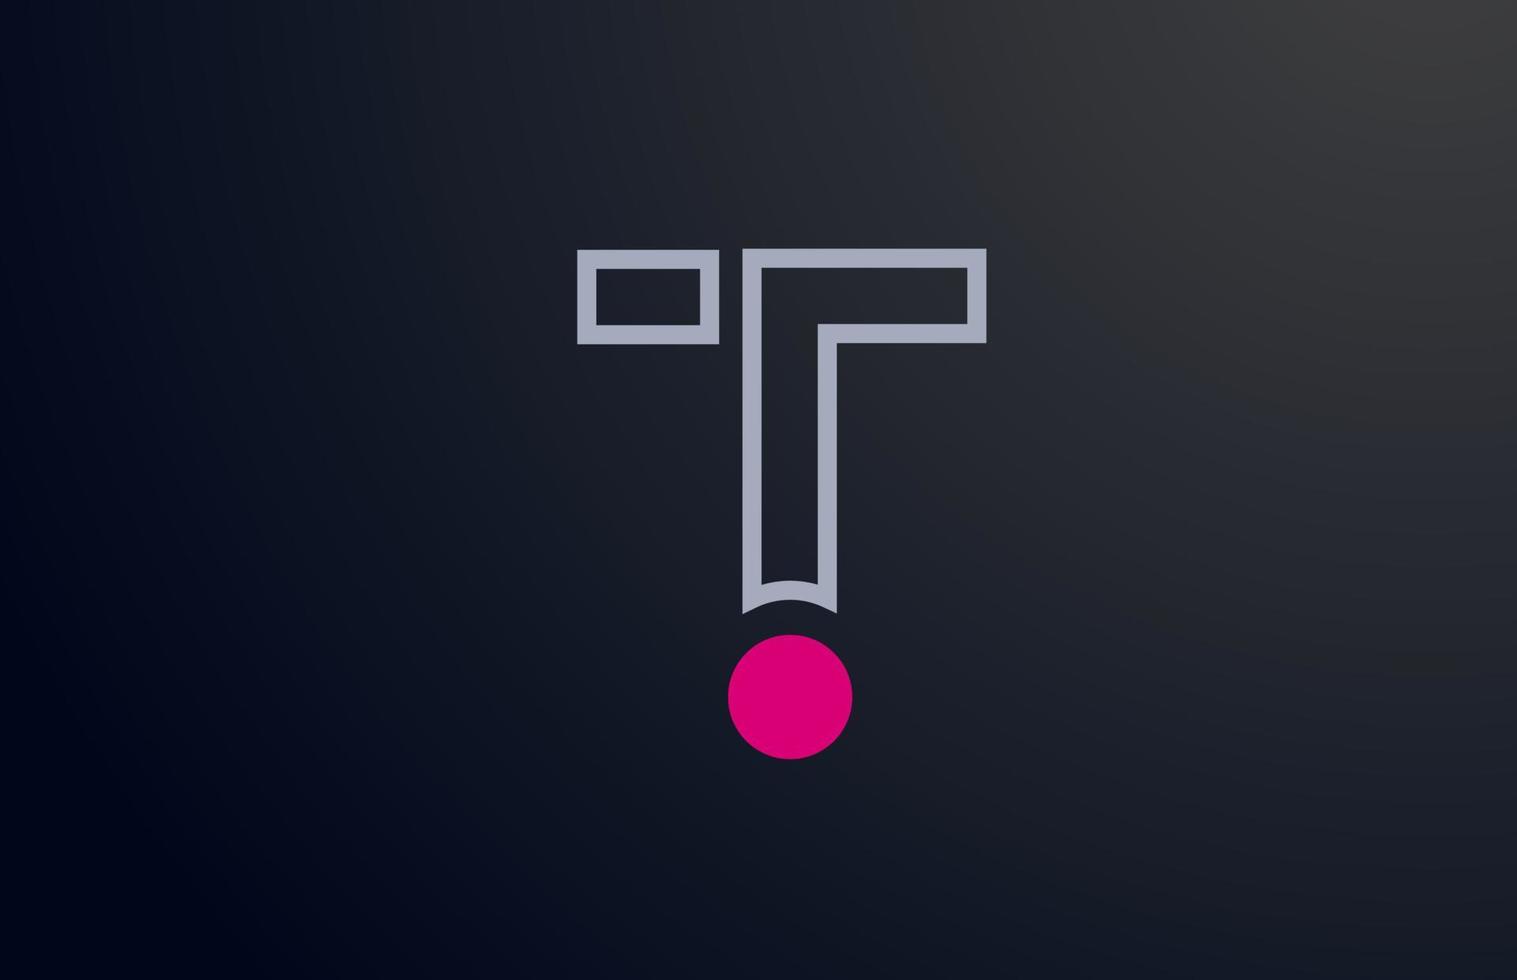 blauw roze lijn t alfabet letter logo ontwerp met cirkel pictogram voor bedrijf en onderneming vector